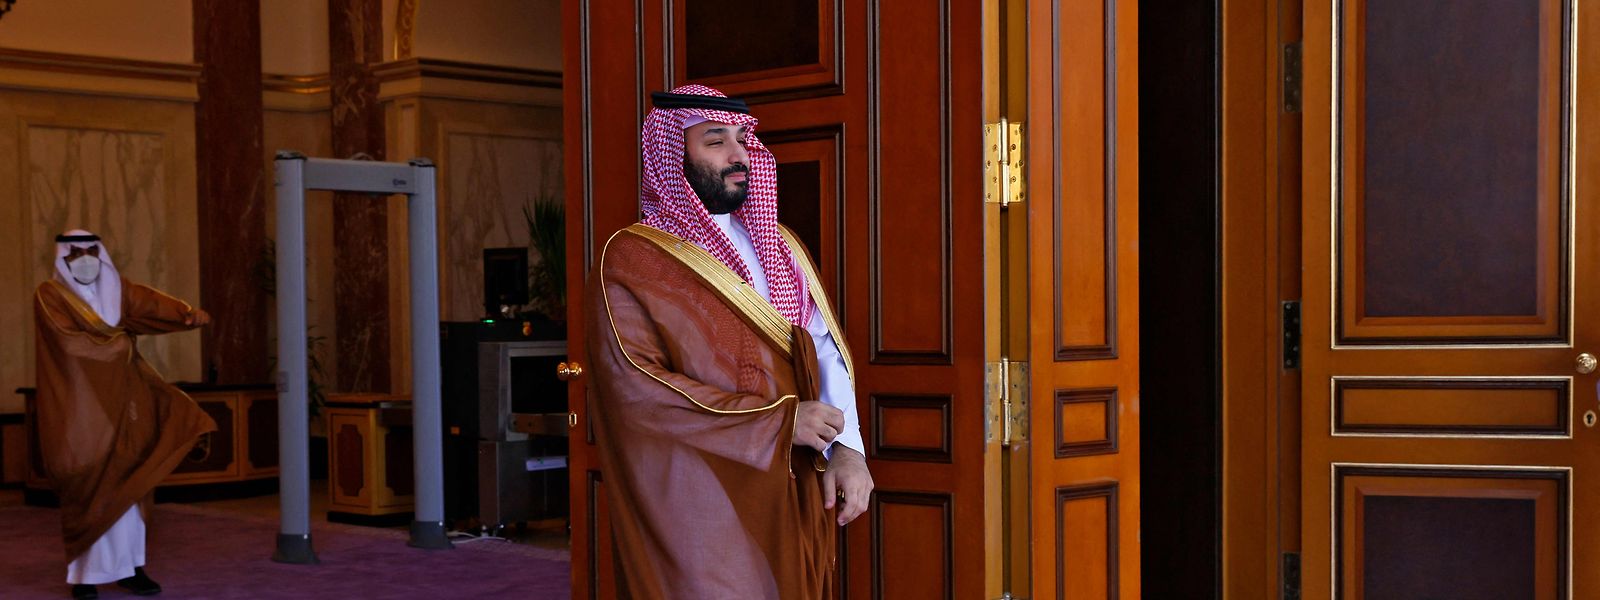 Der saudische Kronprinz Mohammed bin Salman soll hinter dem brutalen Mord am Dissidenten Jamal Khashoggi stecken.